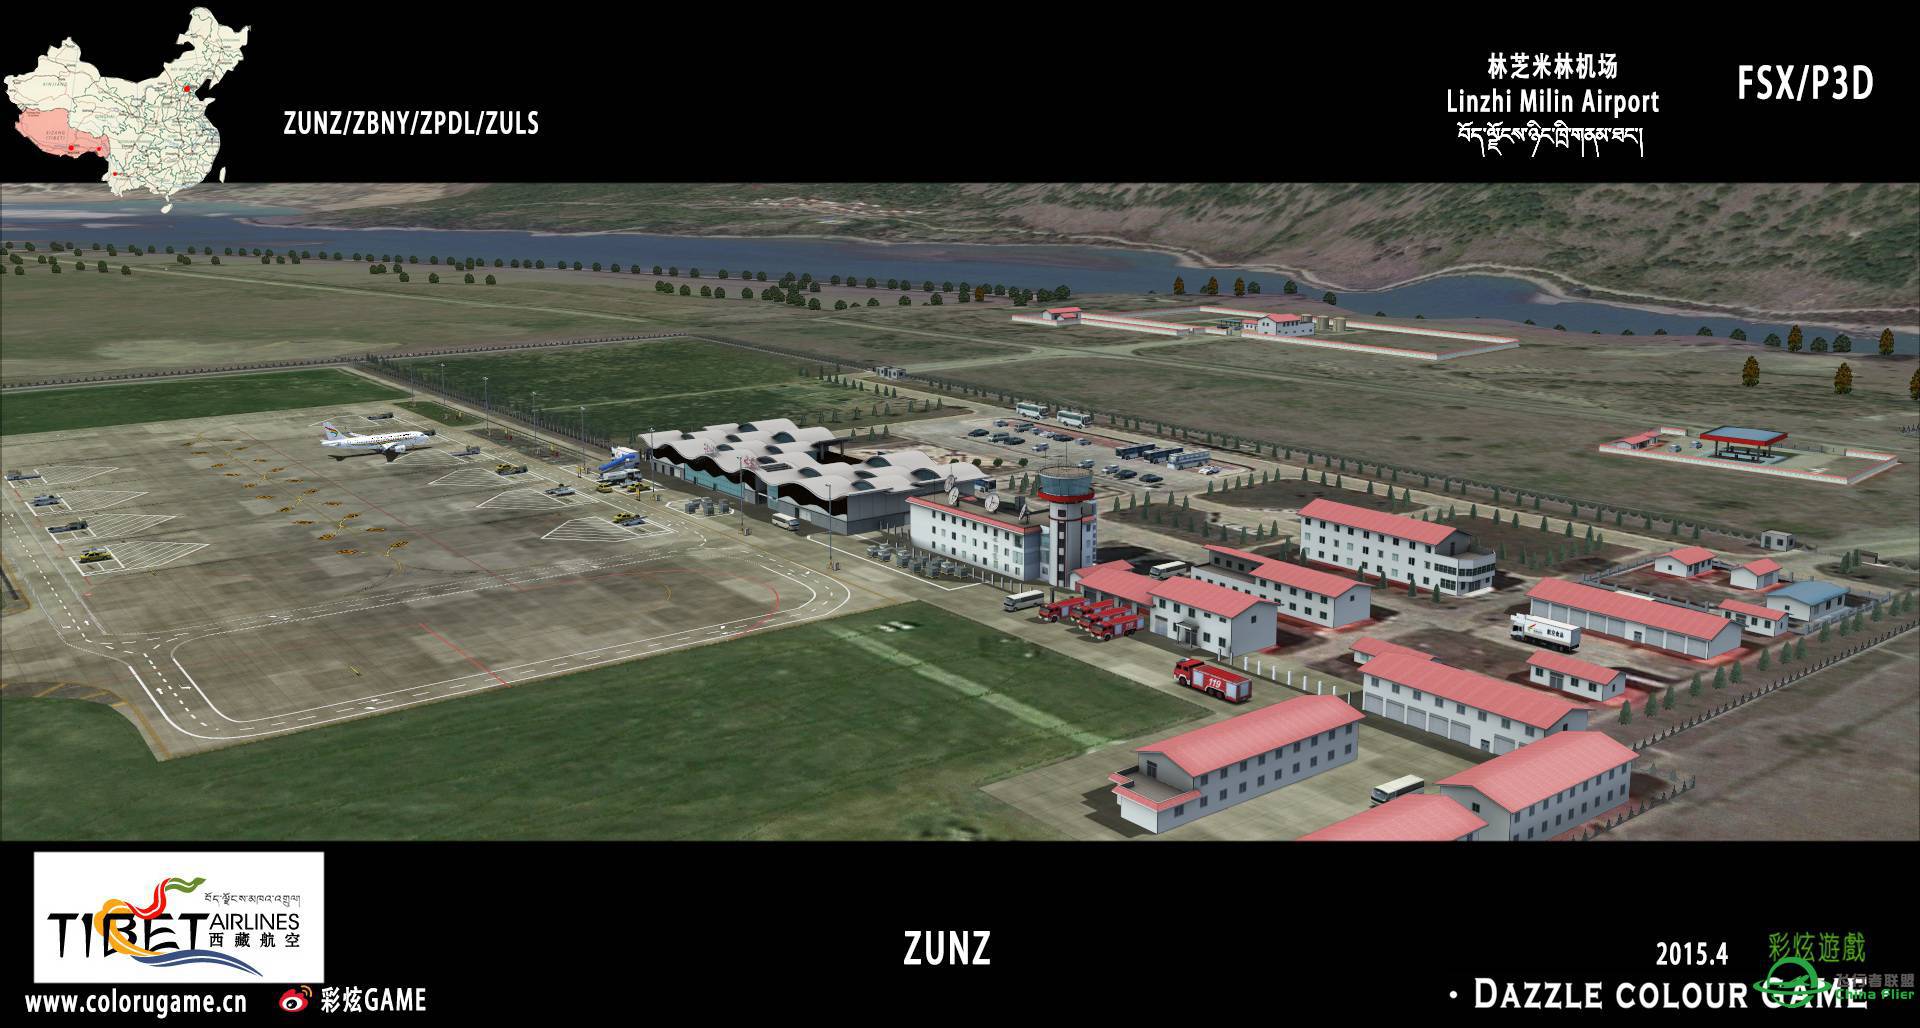 彩炫地景：林芝米林机场（ZUNZ）正式发布！-8309 